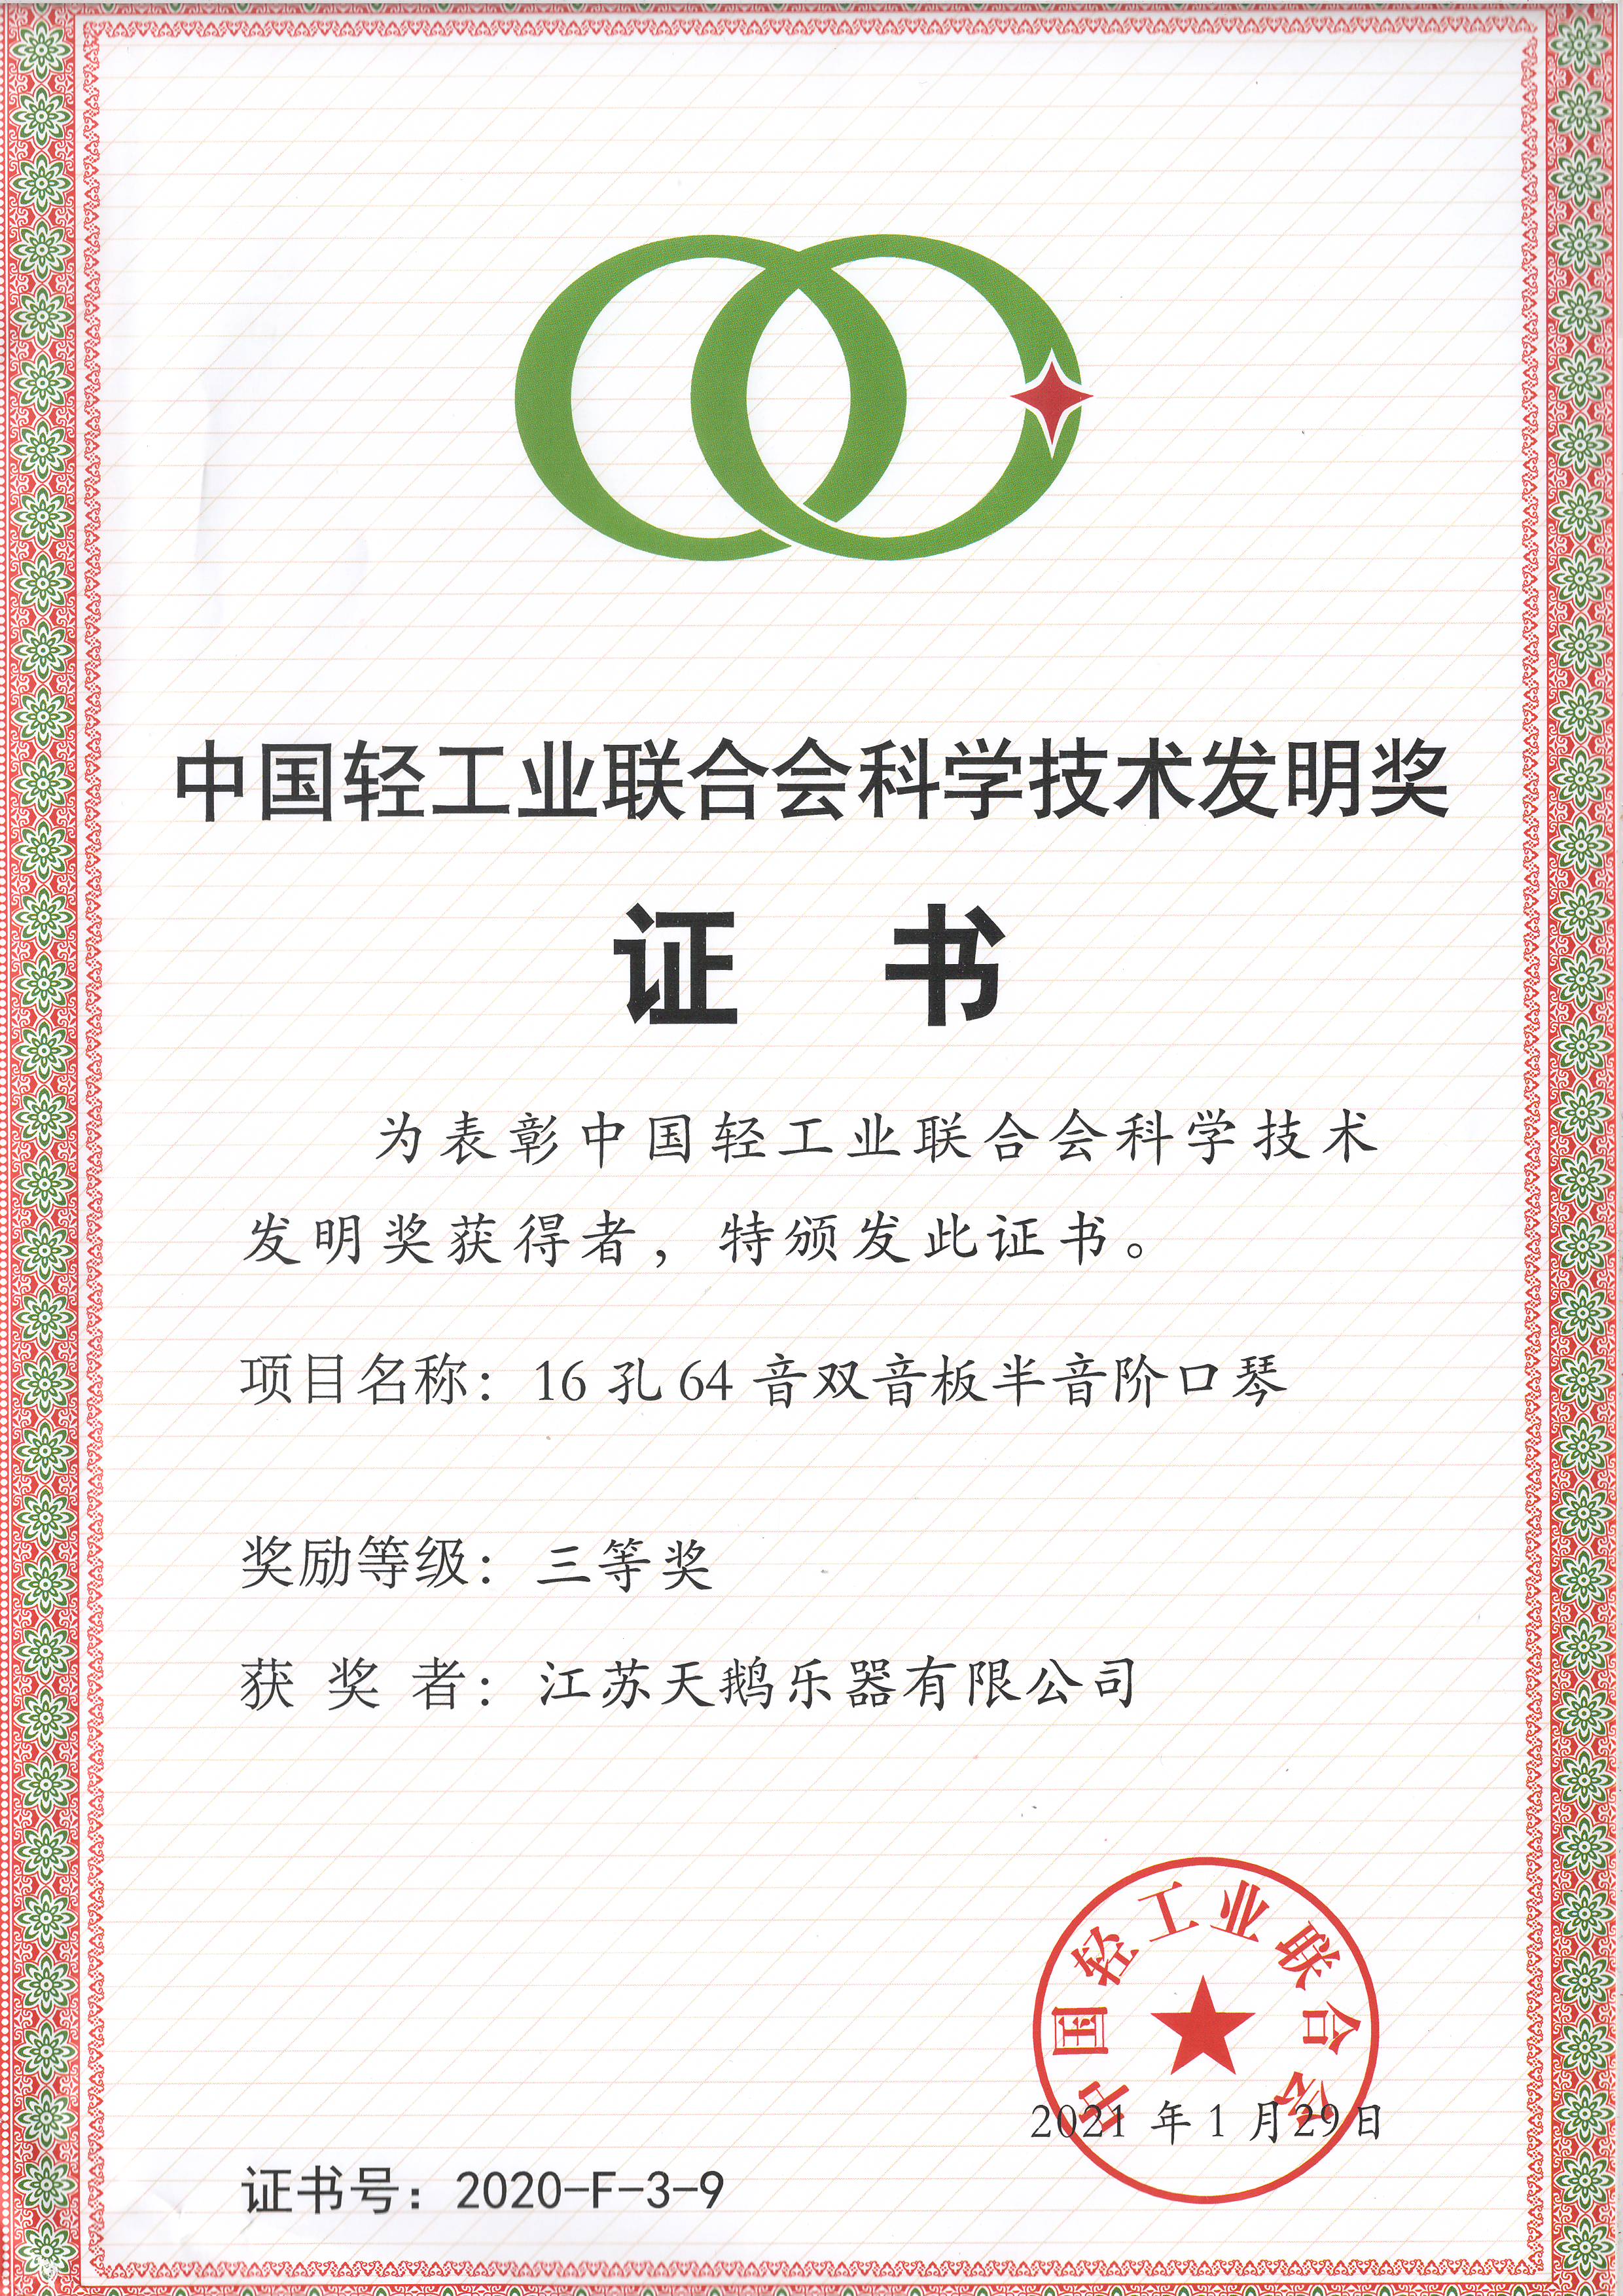 9、中国轻工联合会科学技术发明奖.JPG